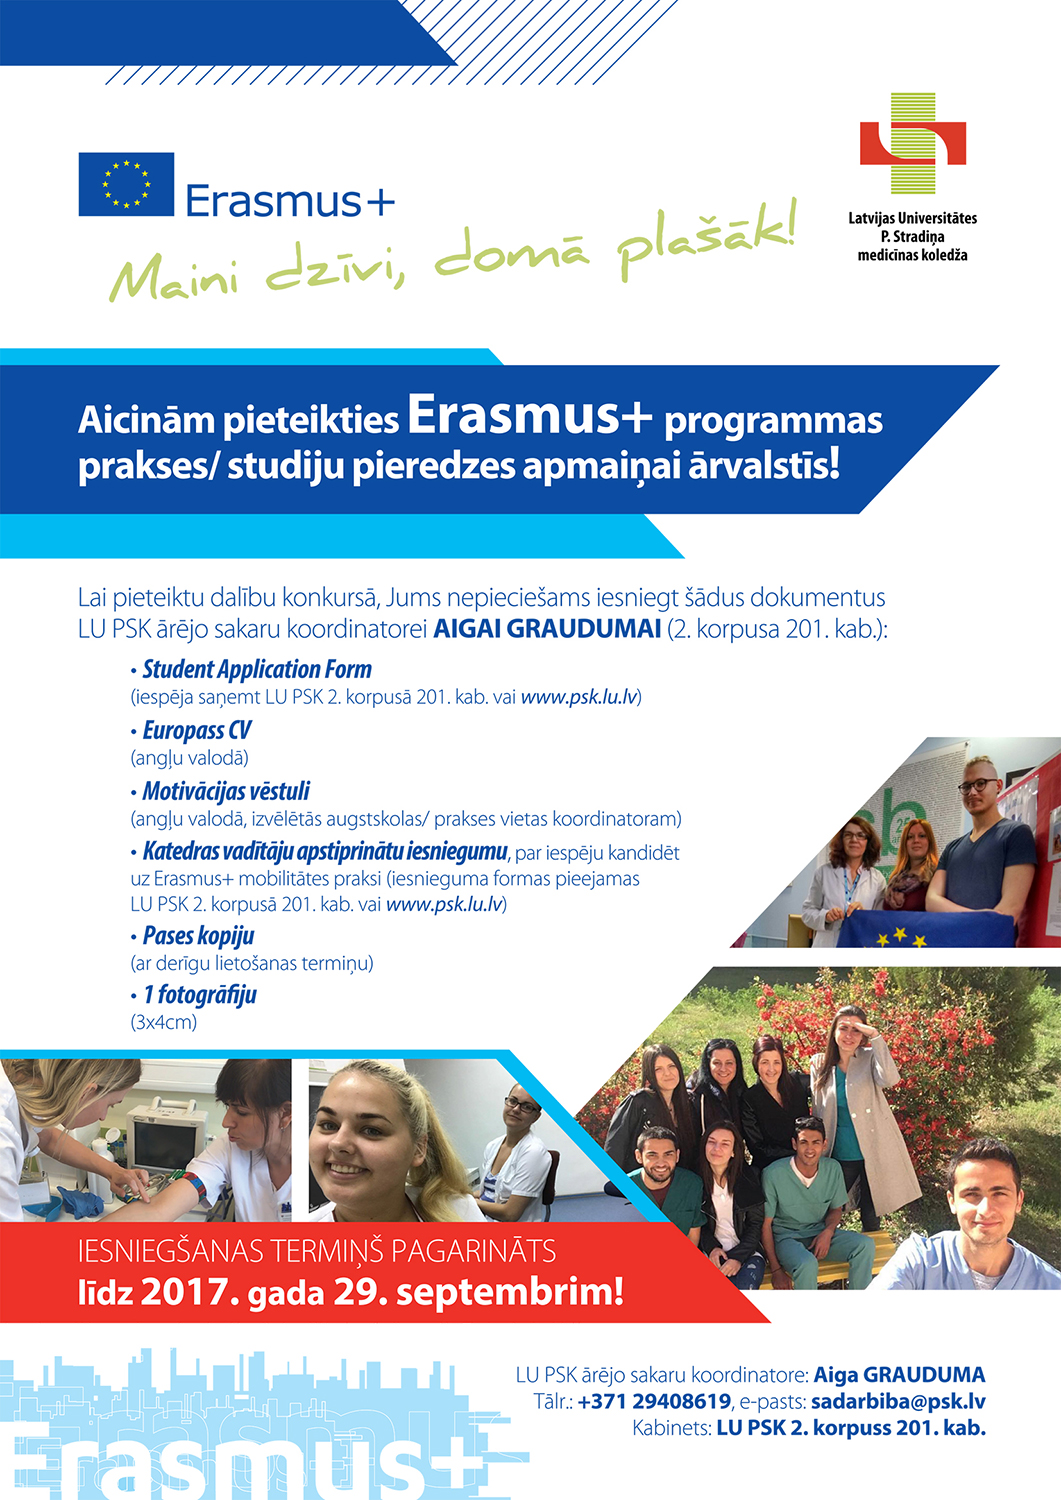 Pagarināta pietikšanās Erasmus+